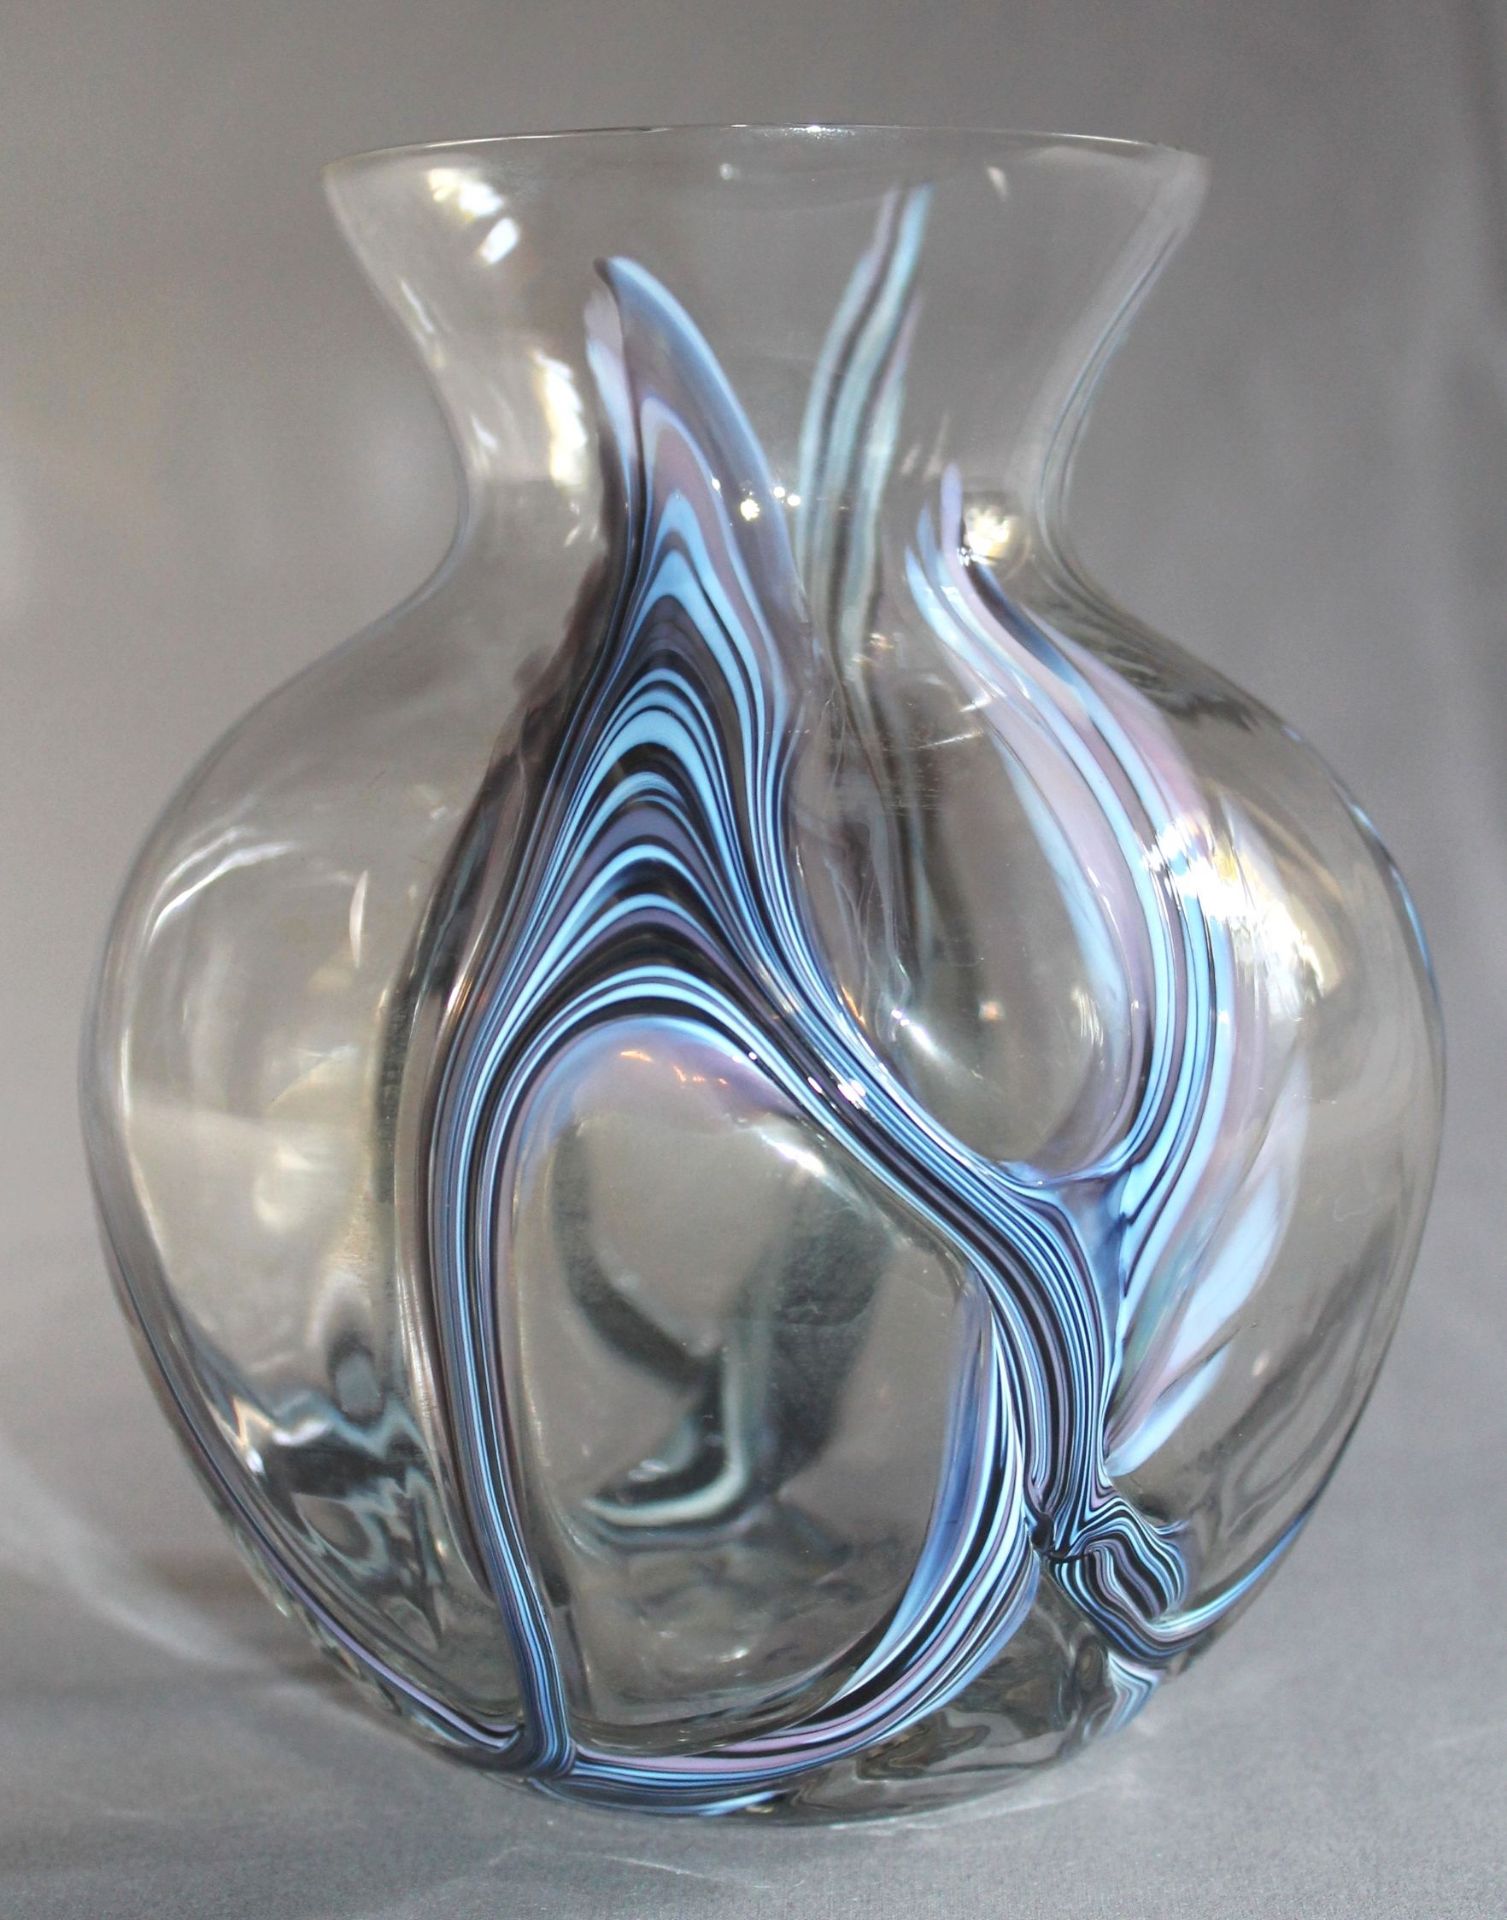 2 Vasen; 1 Vase, farbloses Glas mit bunten vertikalen Fadeneinschmelzungen, bauchige Form, H ca.